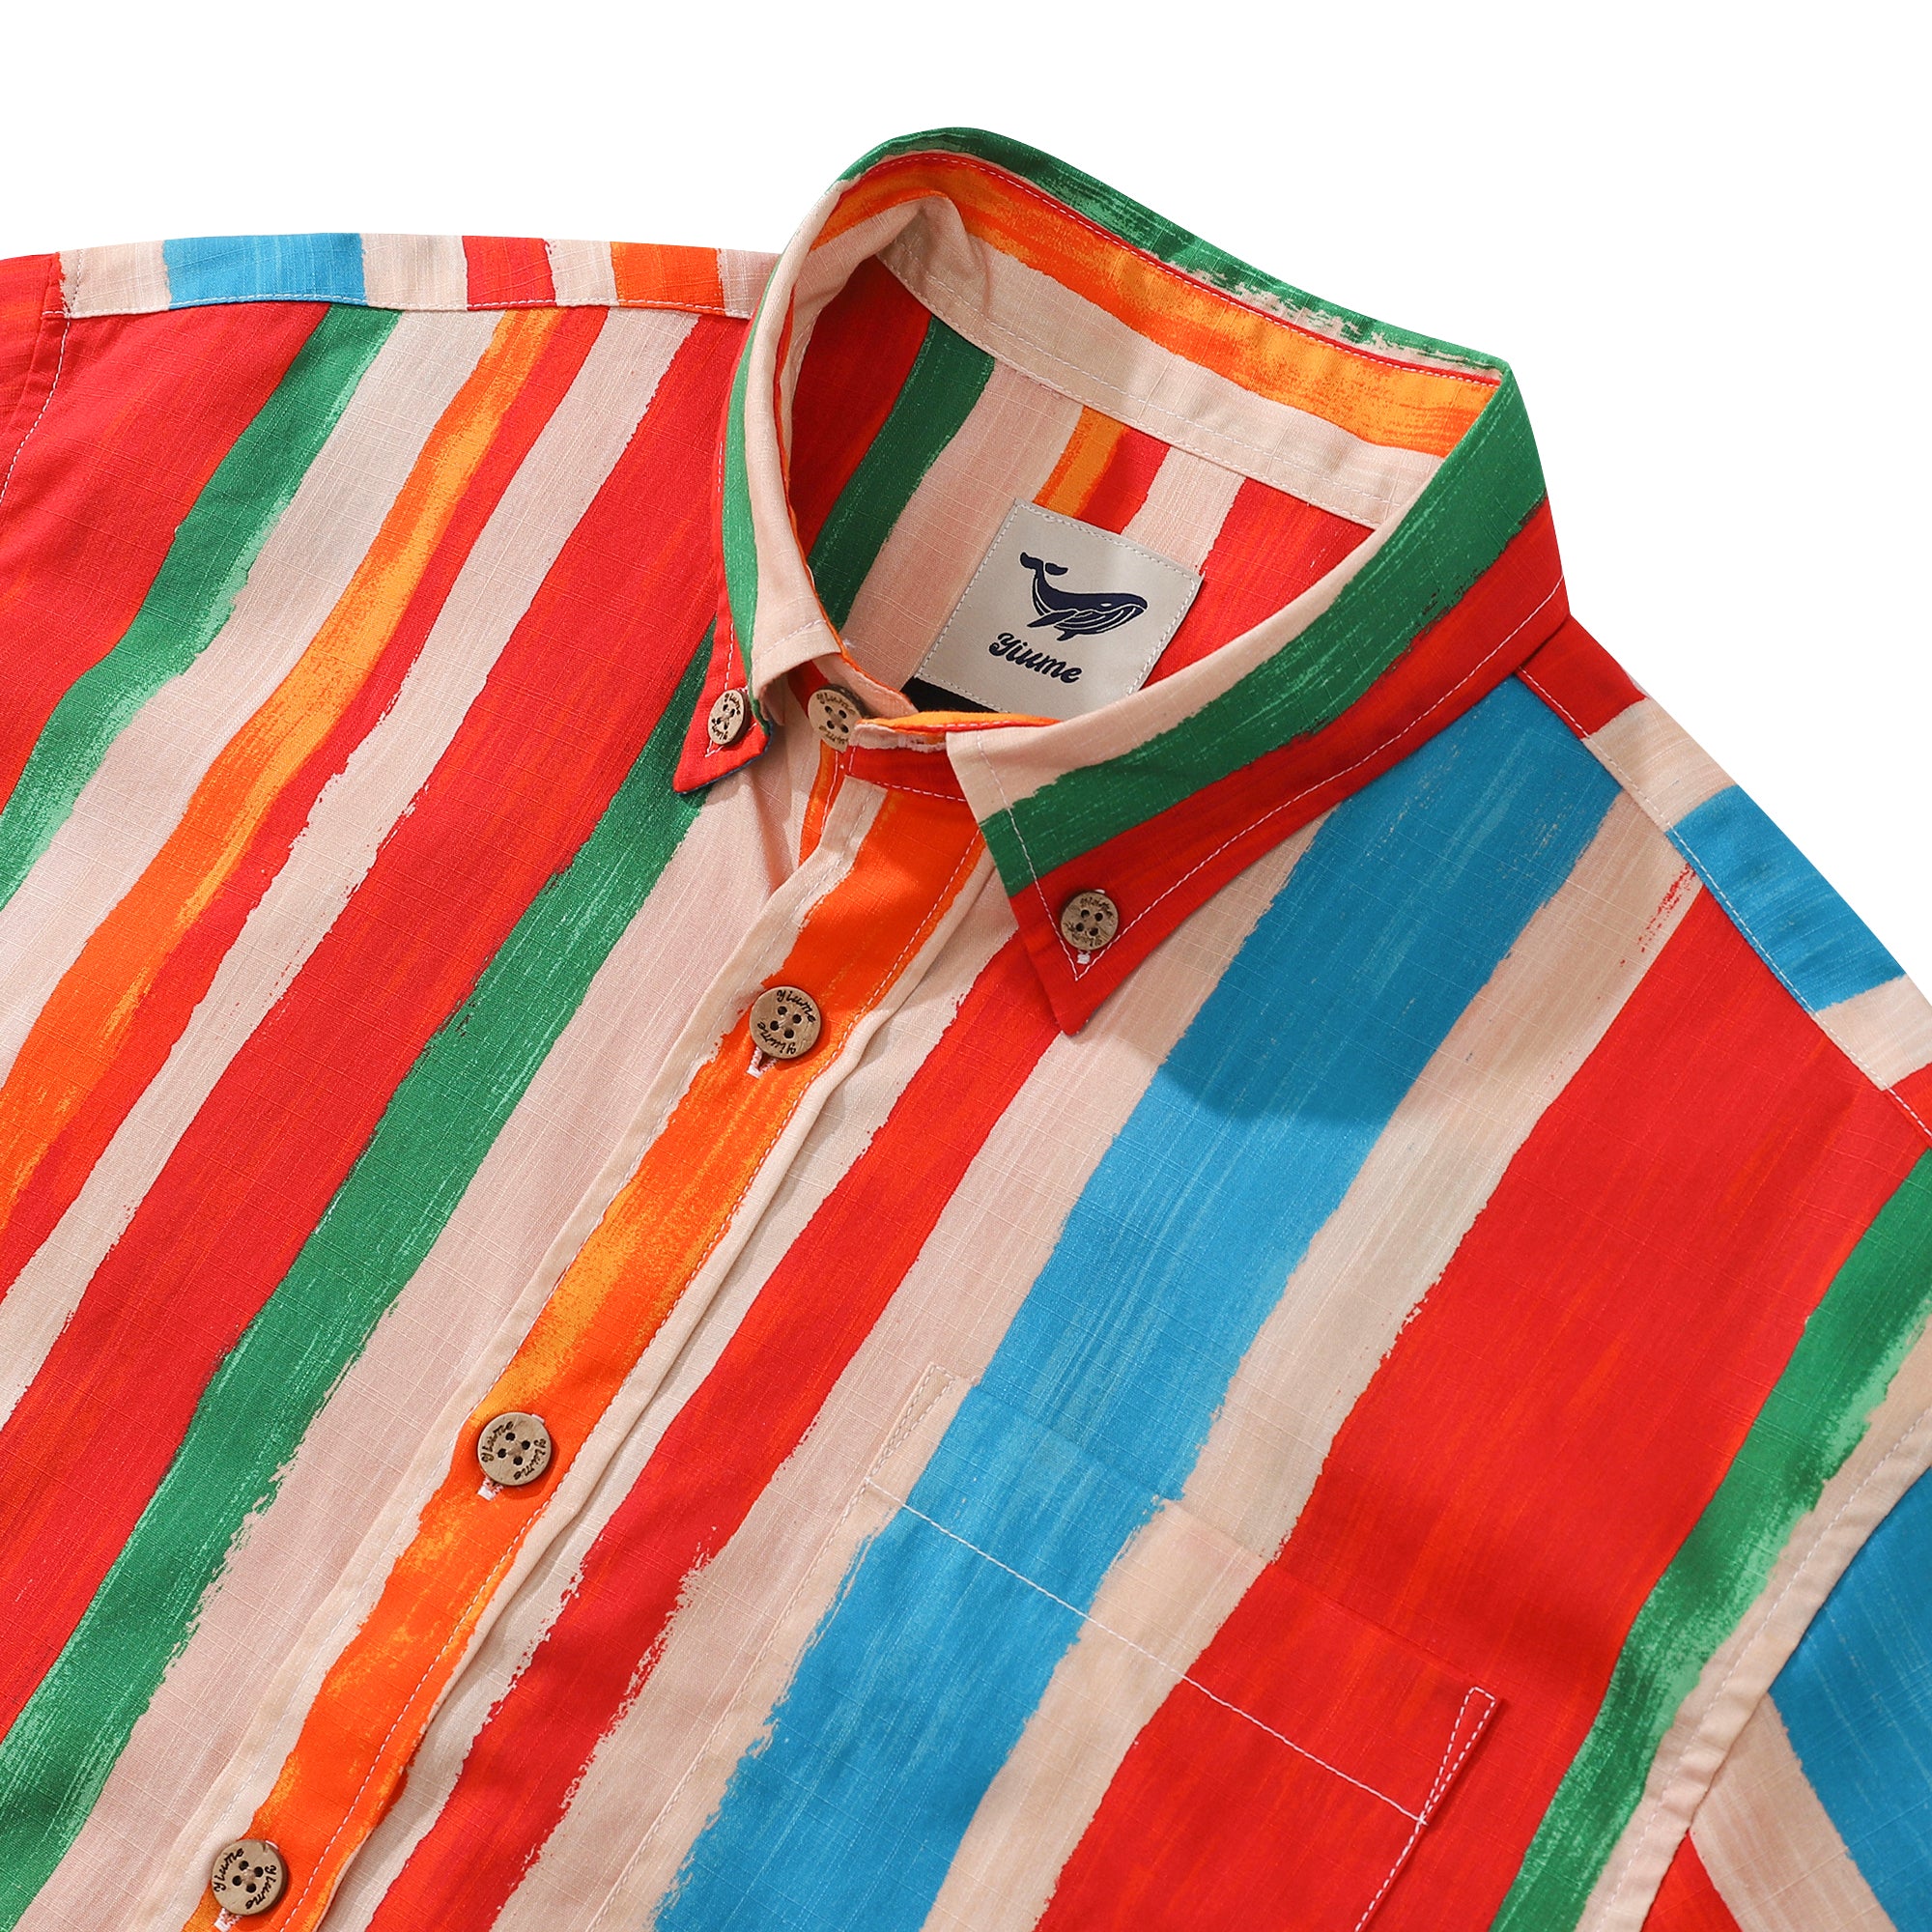 Camicia Aloha da uomo in cotone con motivo a righe colorate, manica corta, bottoni